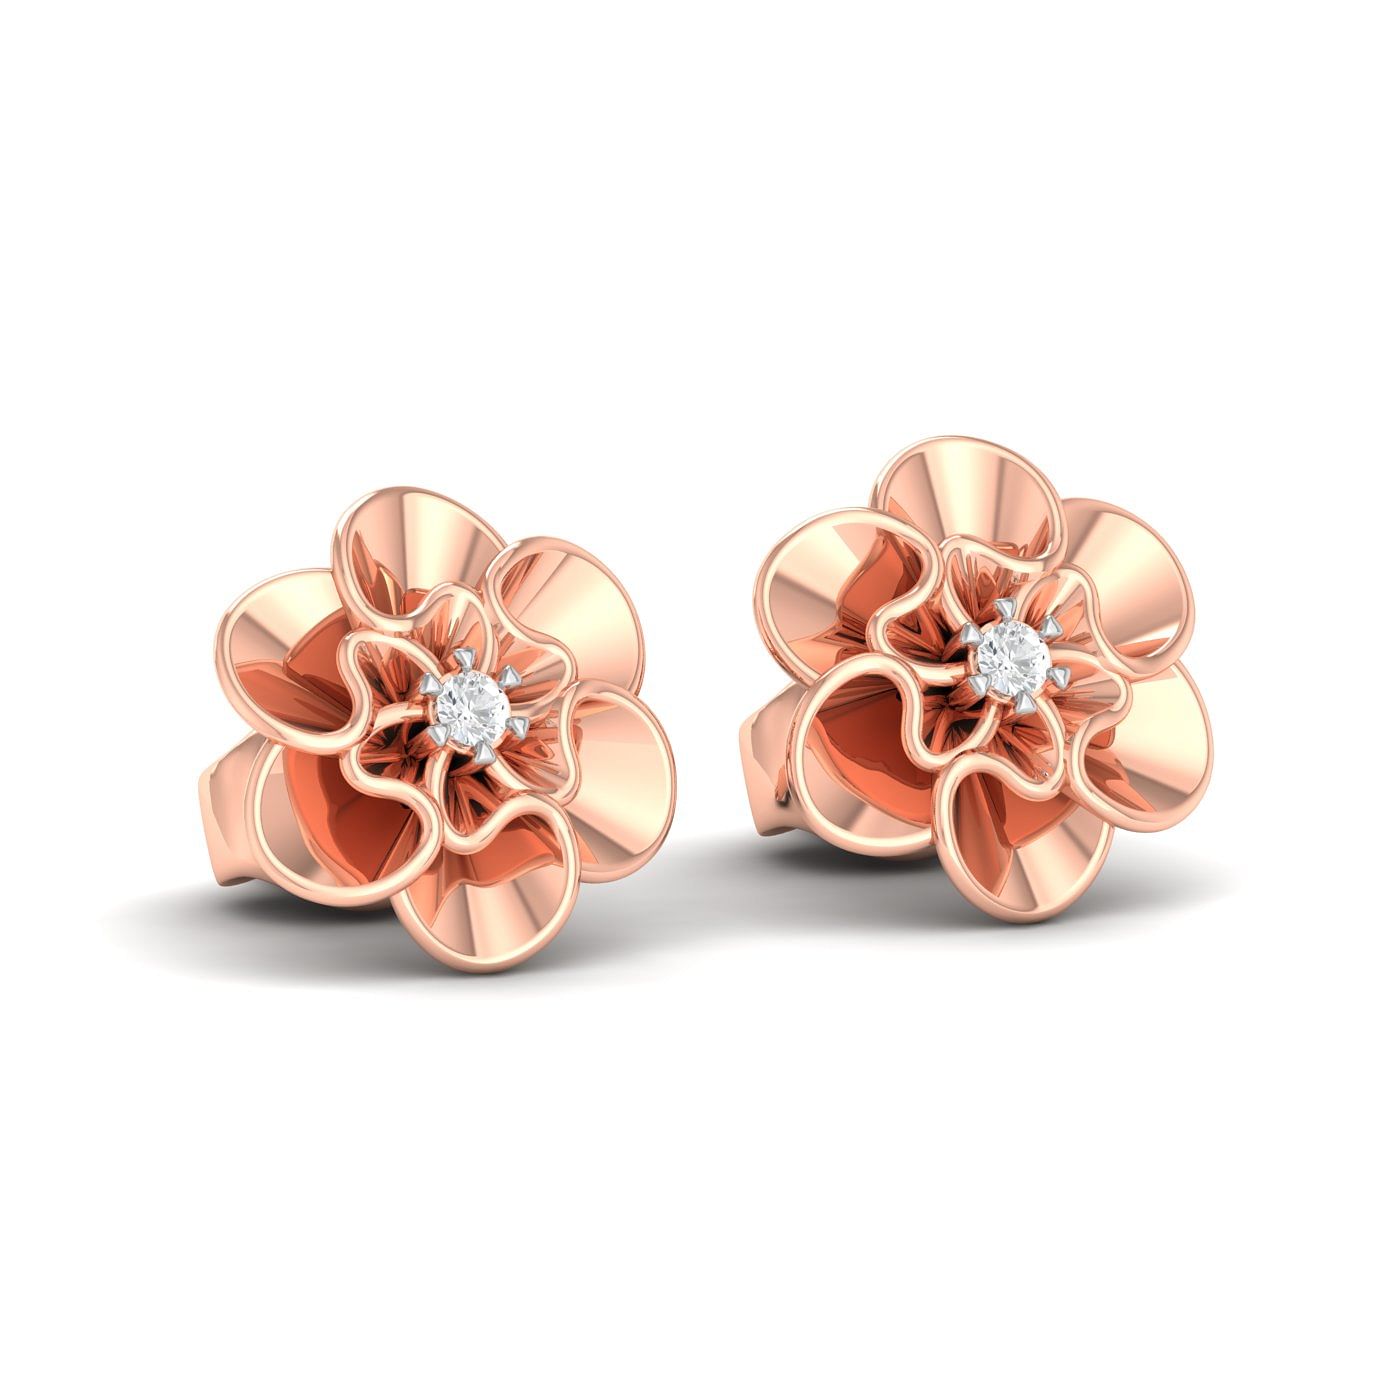 18k Rose Gold Delicate Rose Diamond Earrings for daily wear